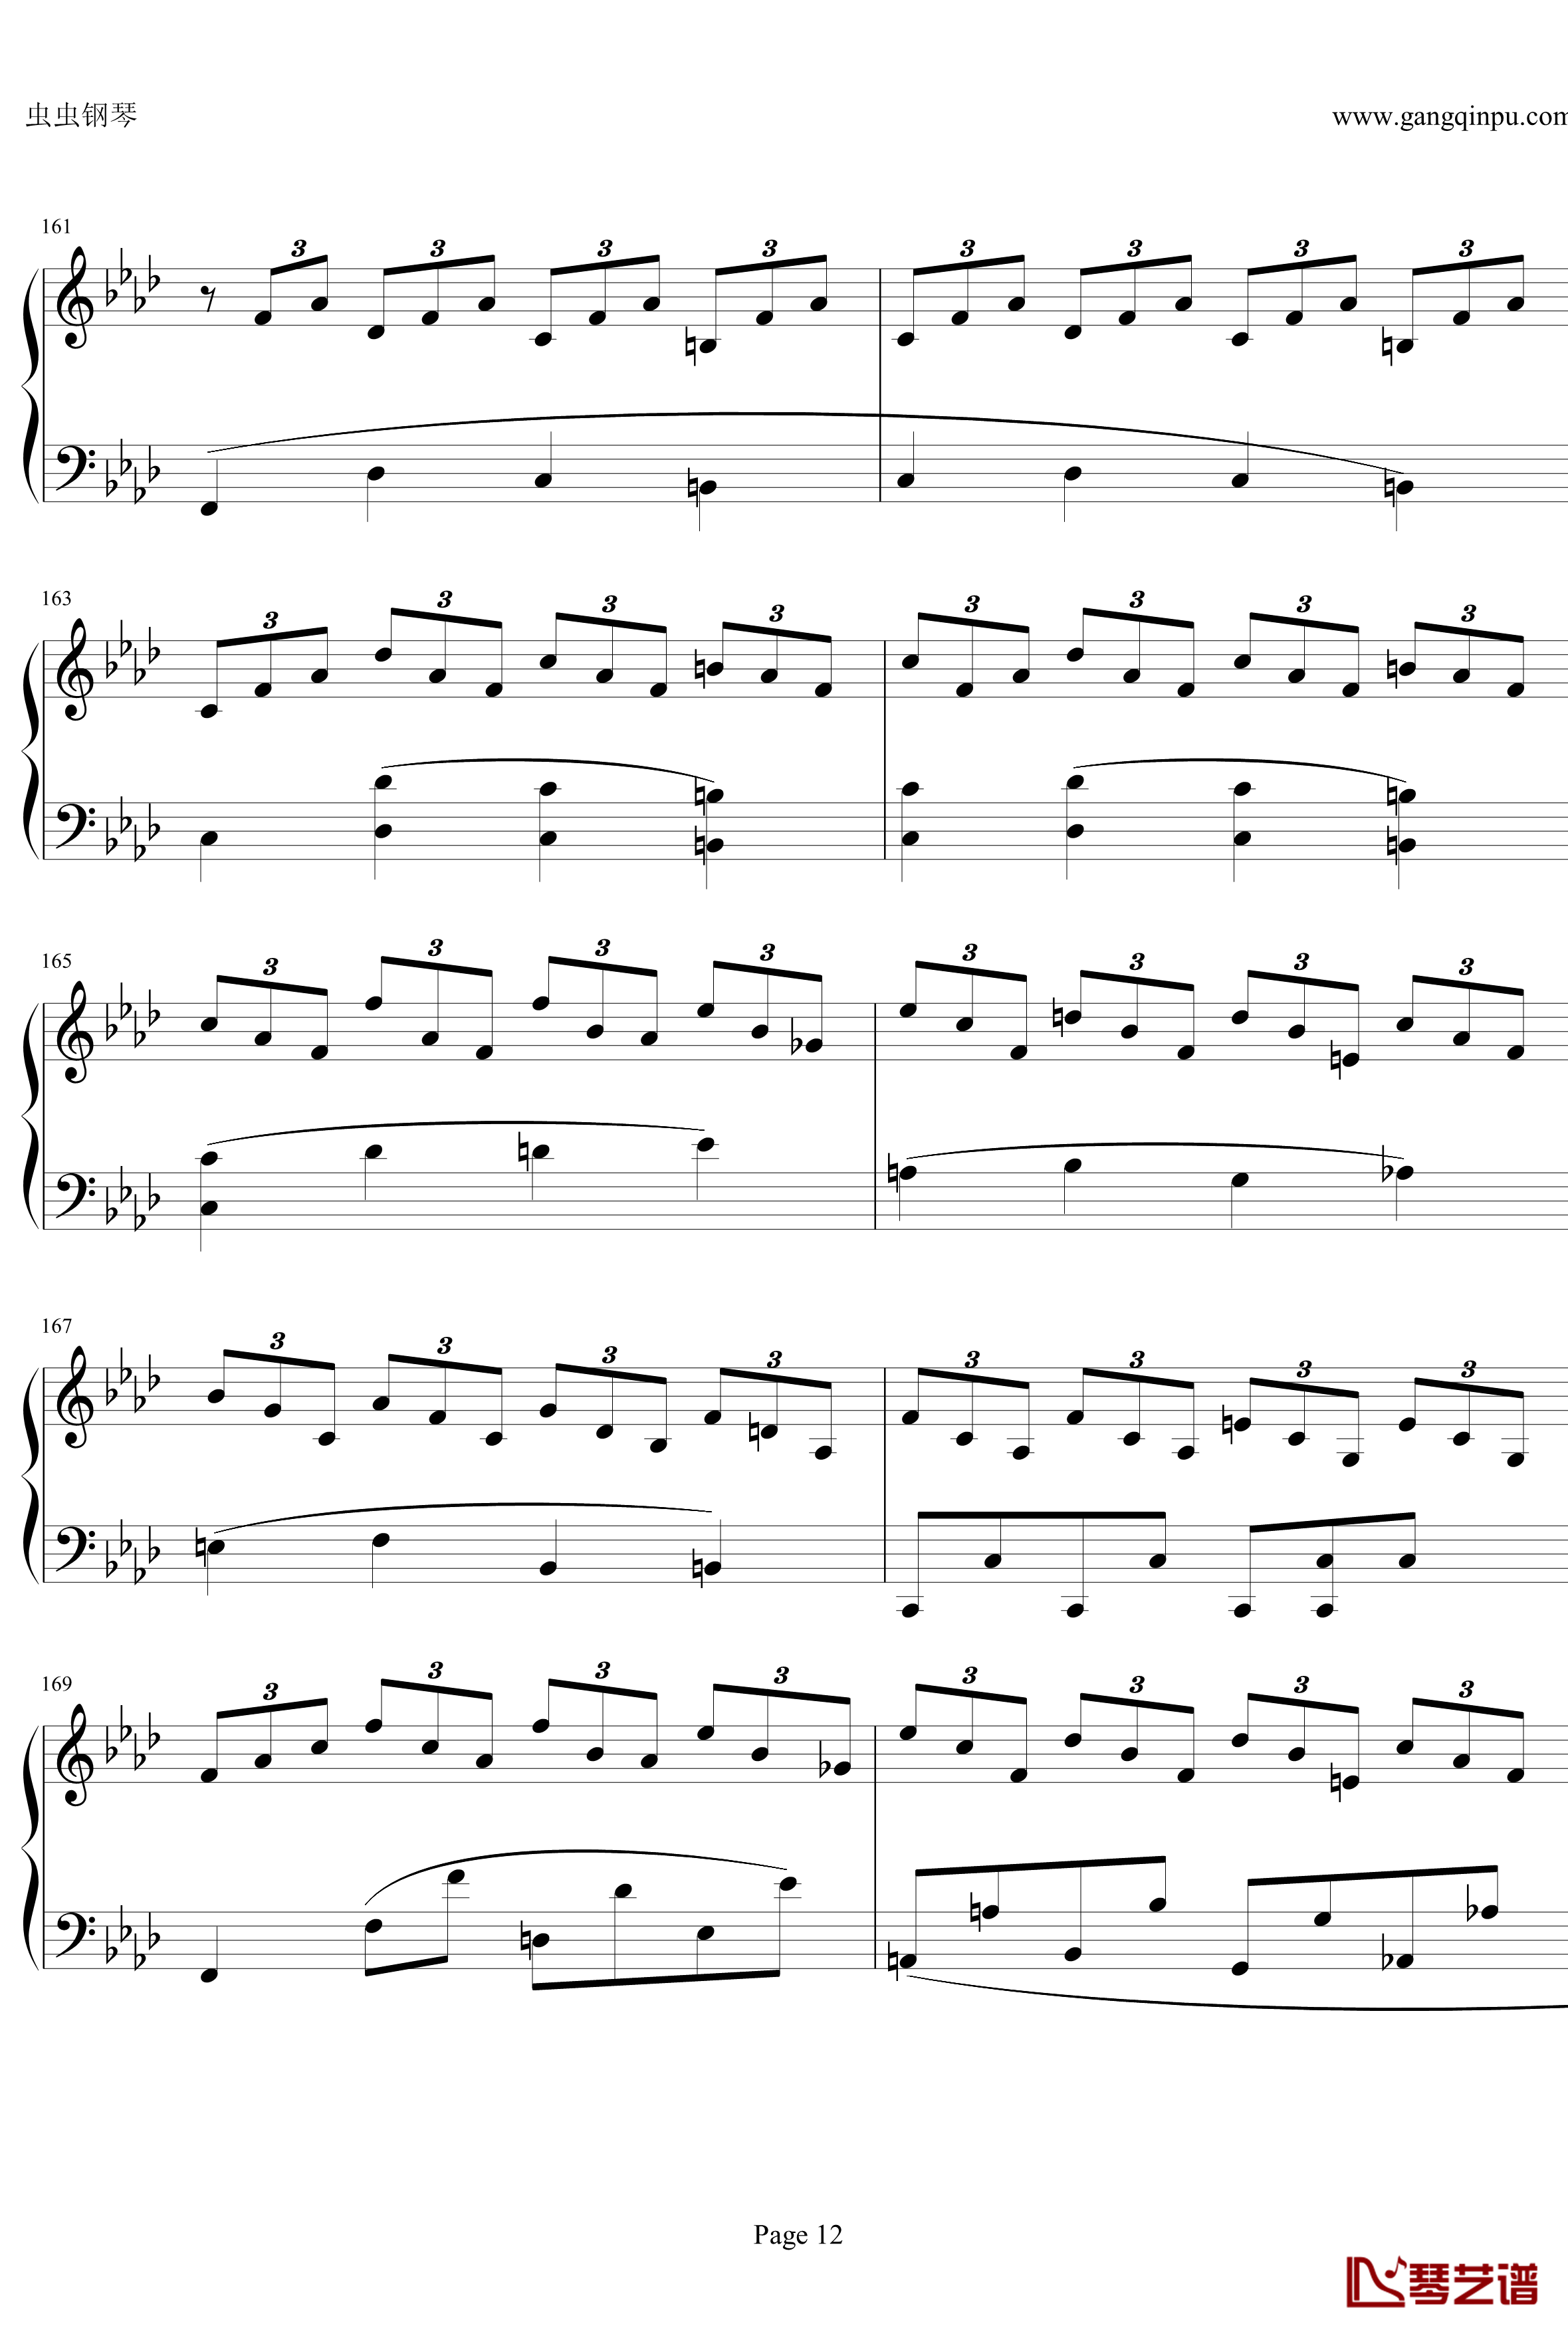 贝多芬第一钢琴奏鸣曲钢琴谱-作品2，第一号-贝多芬-beethoven12